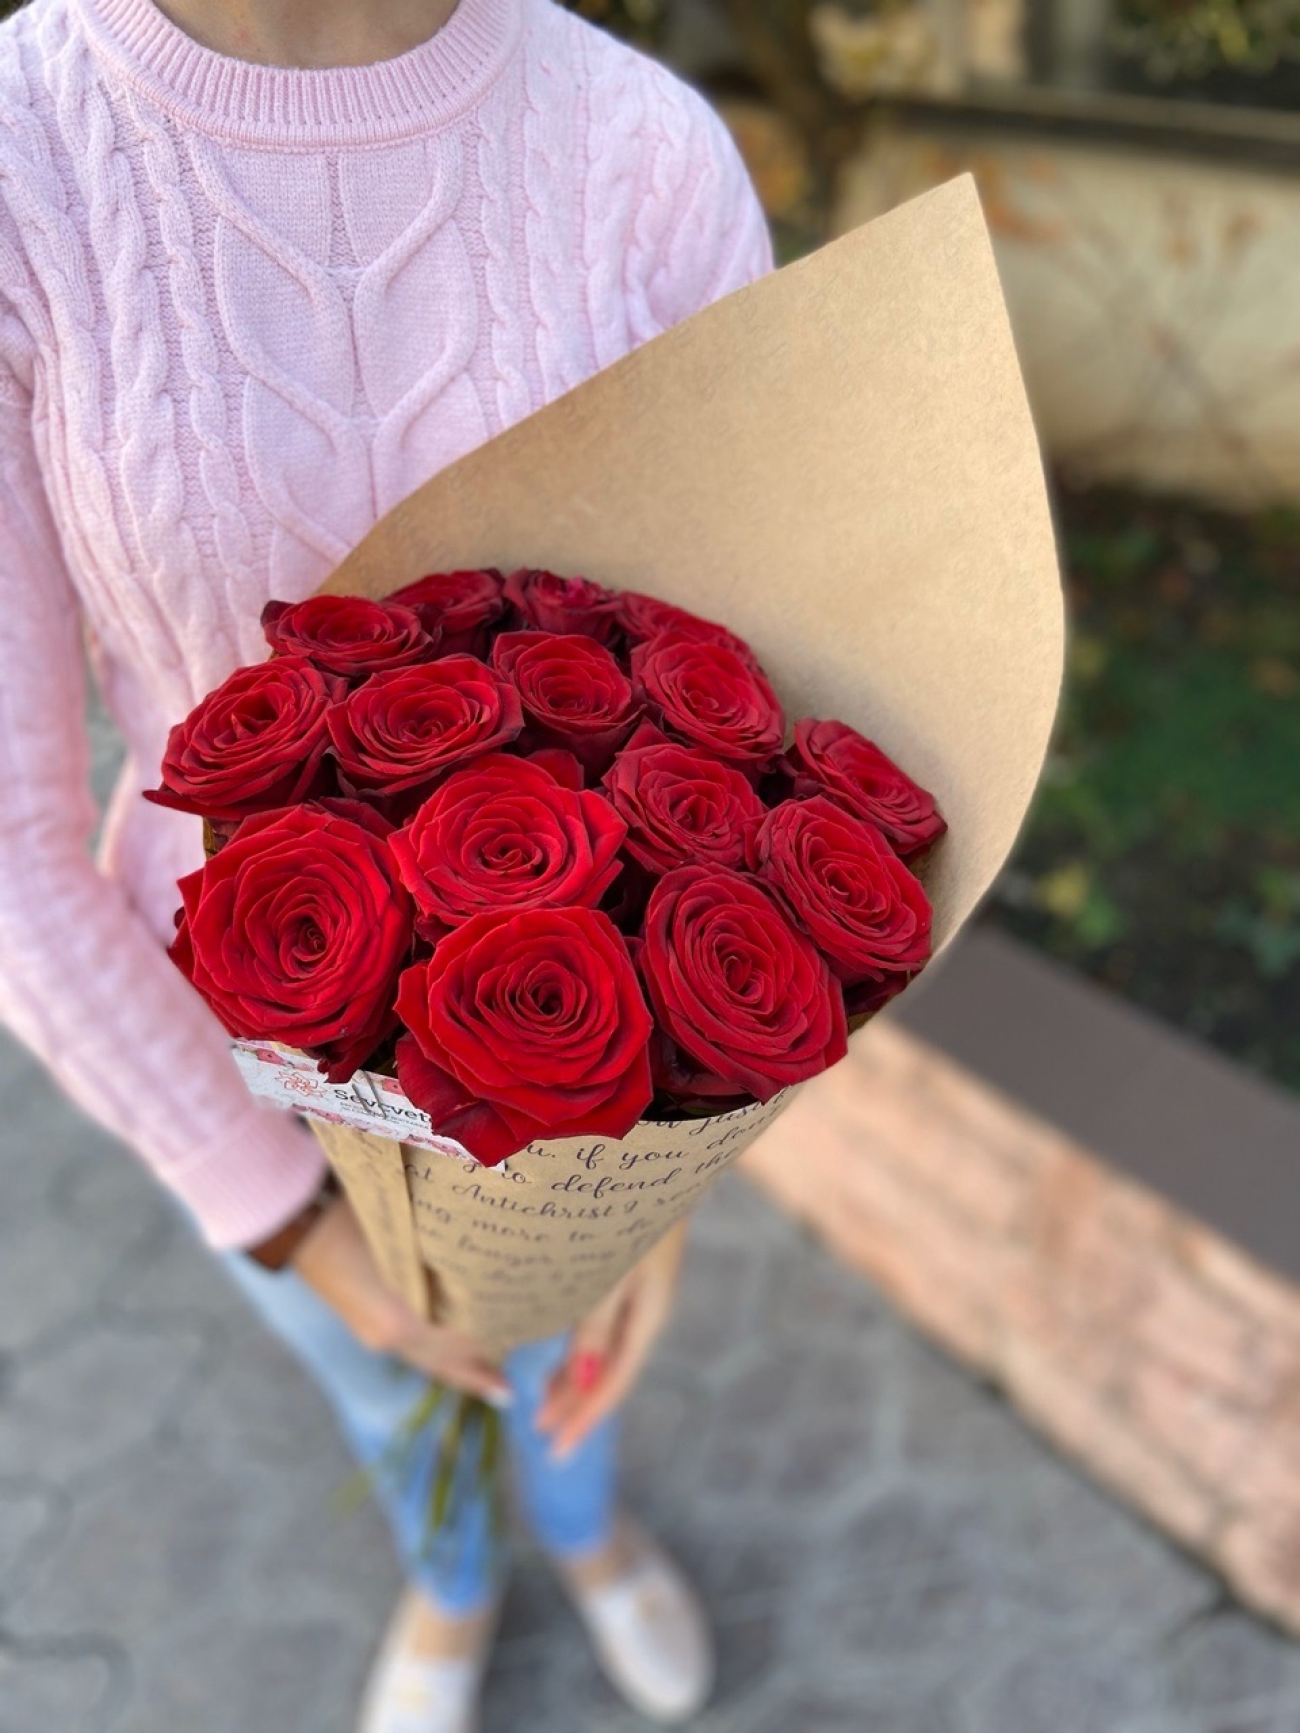 В 3 букетах было 15 роз. Букет из 15 роз. Букет из красных роз. Букет 15 красных роз. Букет из 21 розы.